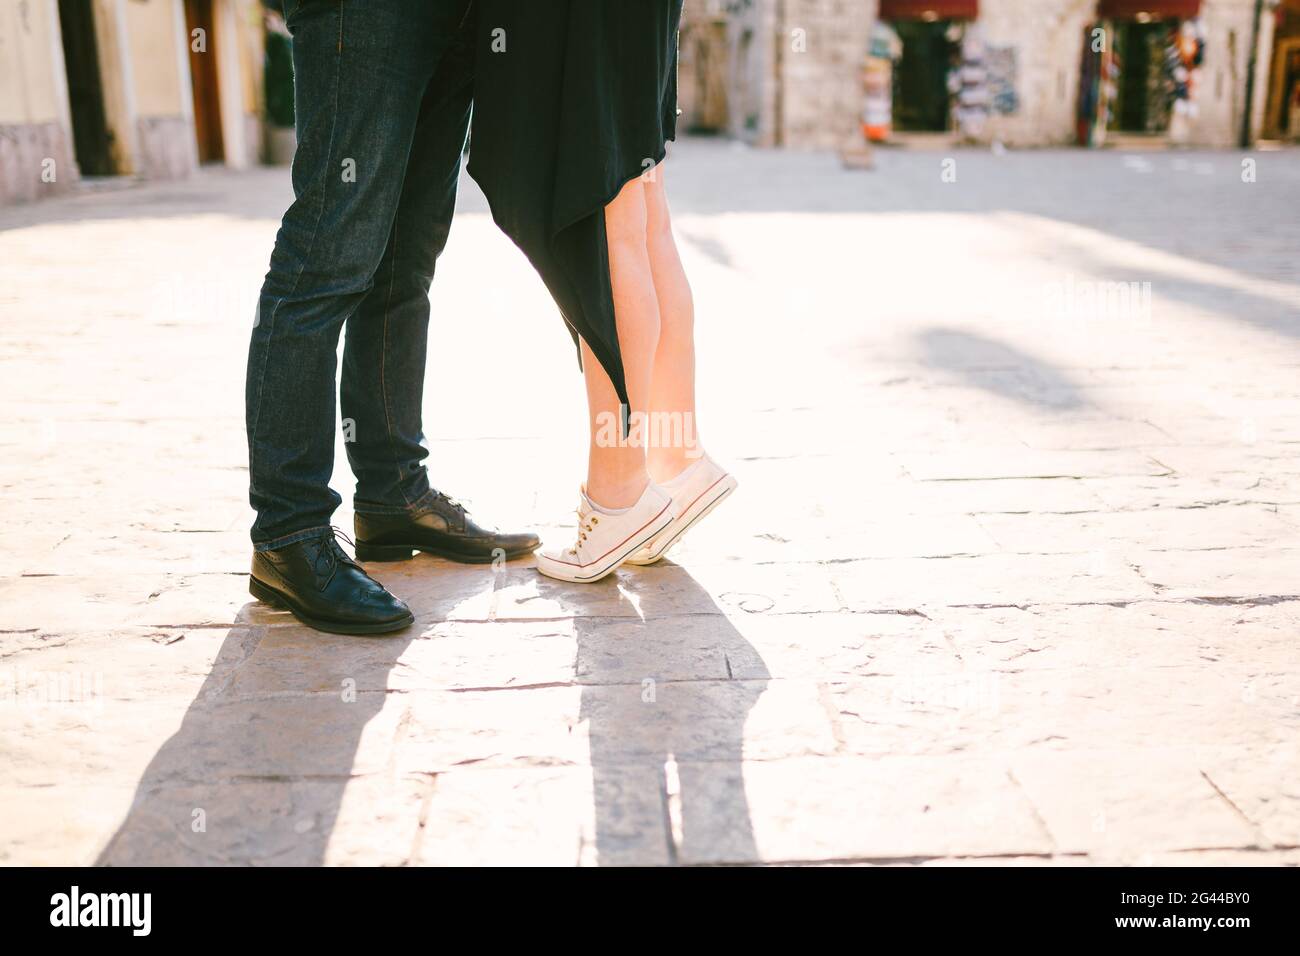 Nahaufnahme der Füße des Paares, die sich auf einem gepflasterten gegenüberstehen Straße Stockfoto